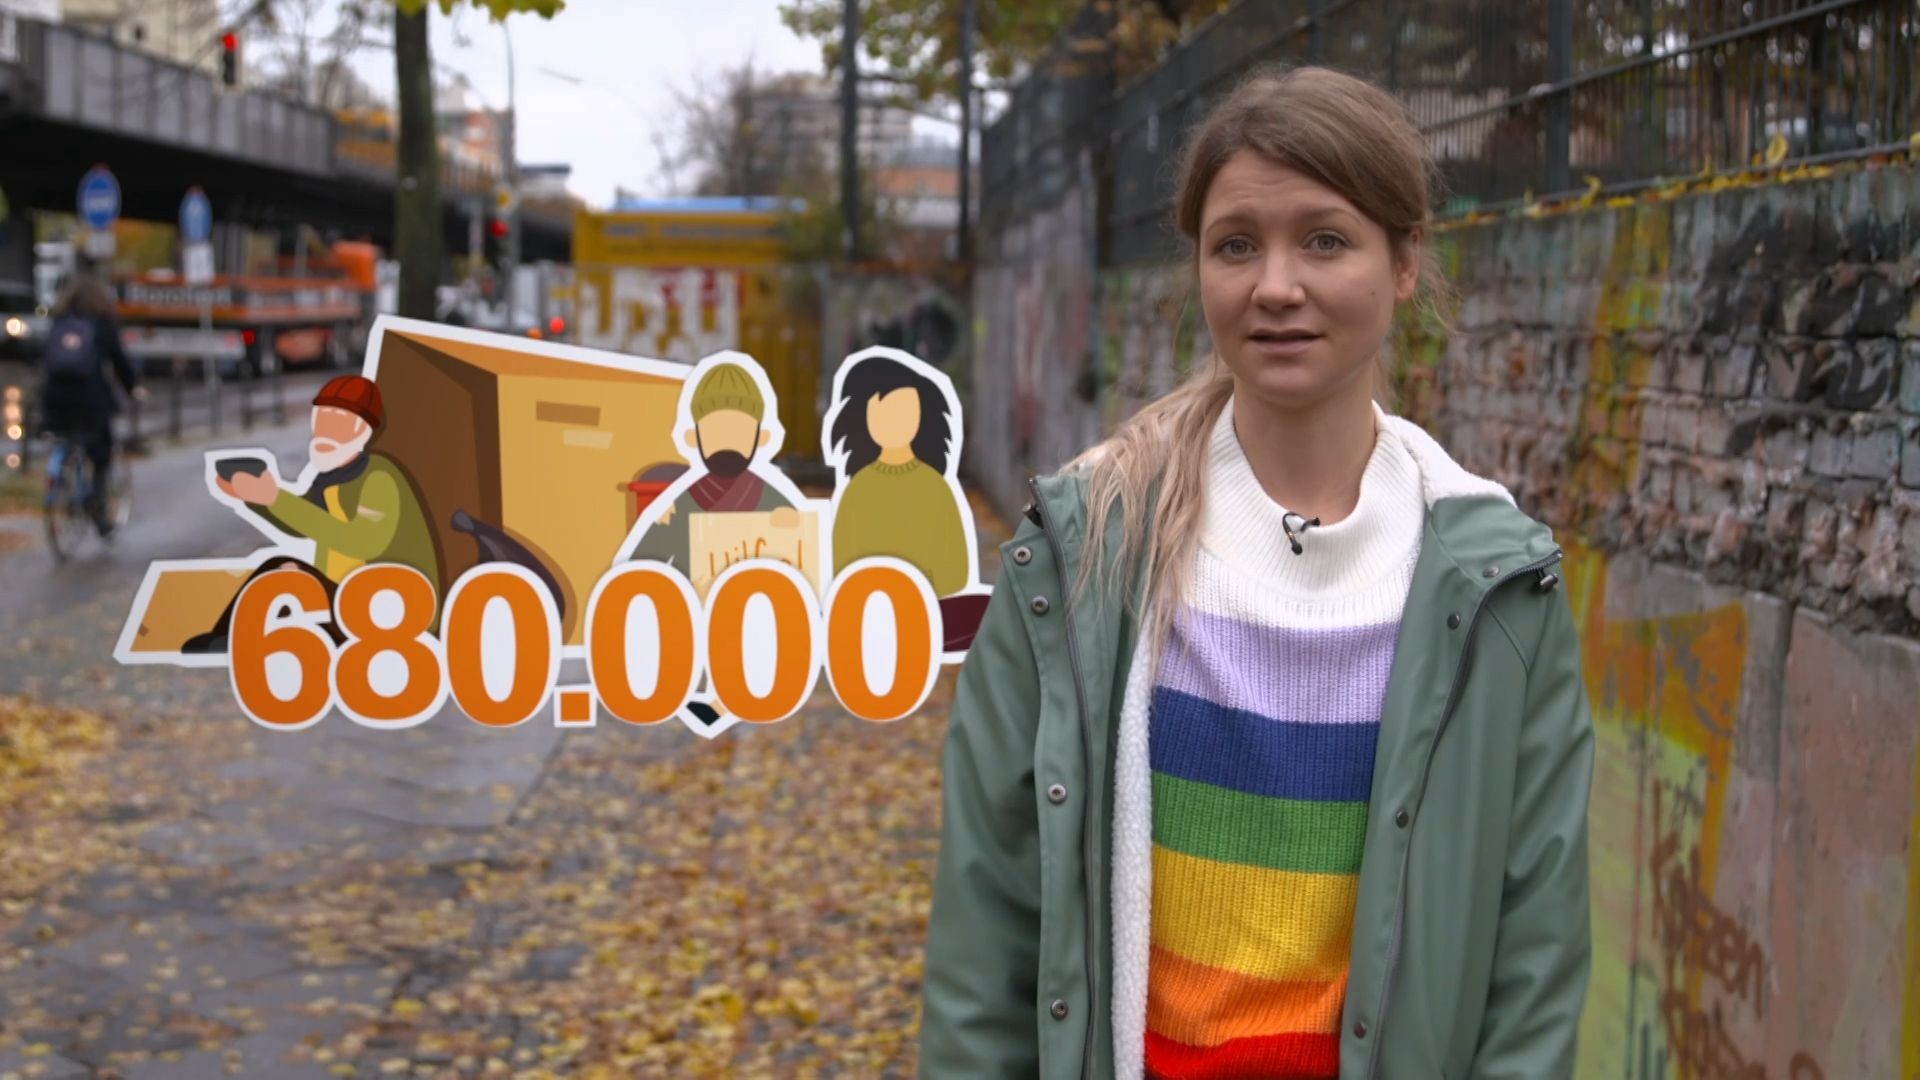 Reporterin Jana steht in einer Straße in Berlin. Neben ihr wird eine Grafik eingeblendet, die Obdachlose und die Zahl 680.000 zeigt.